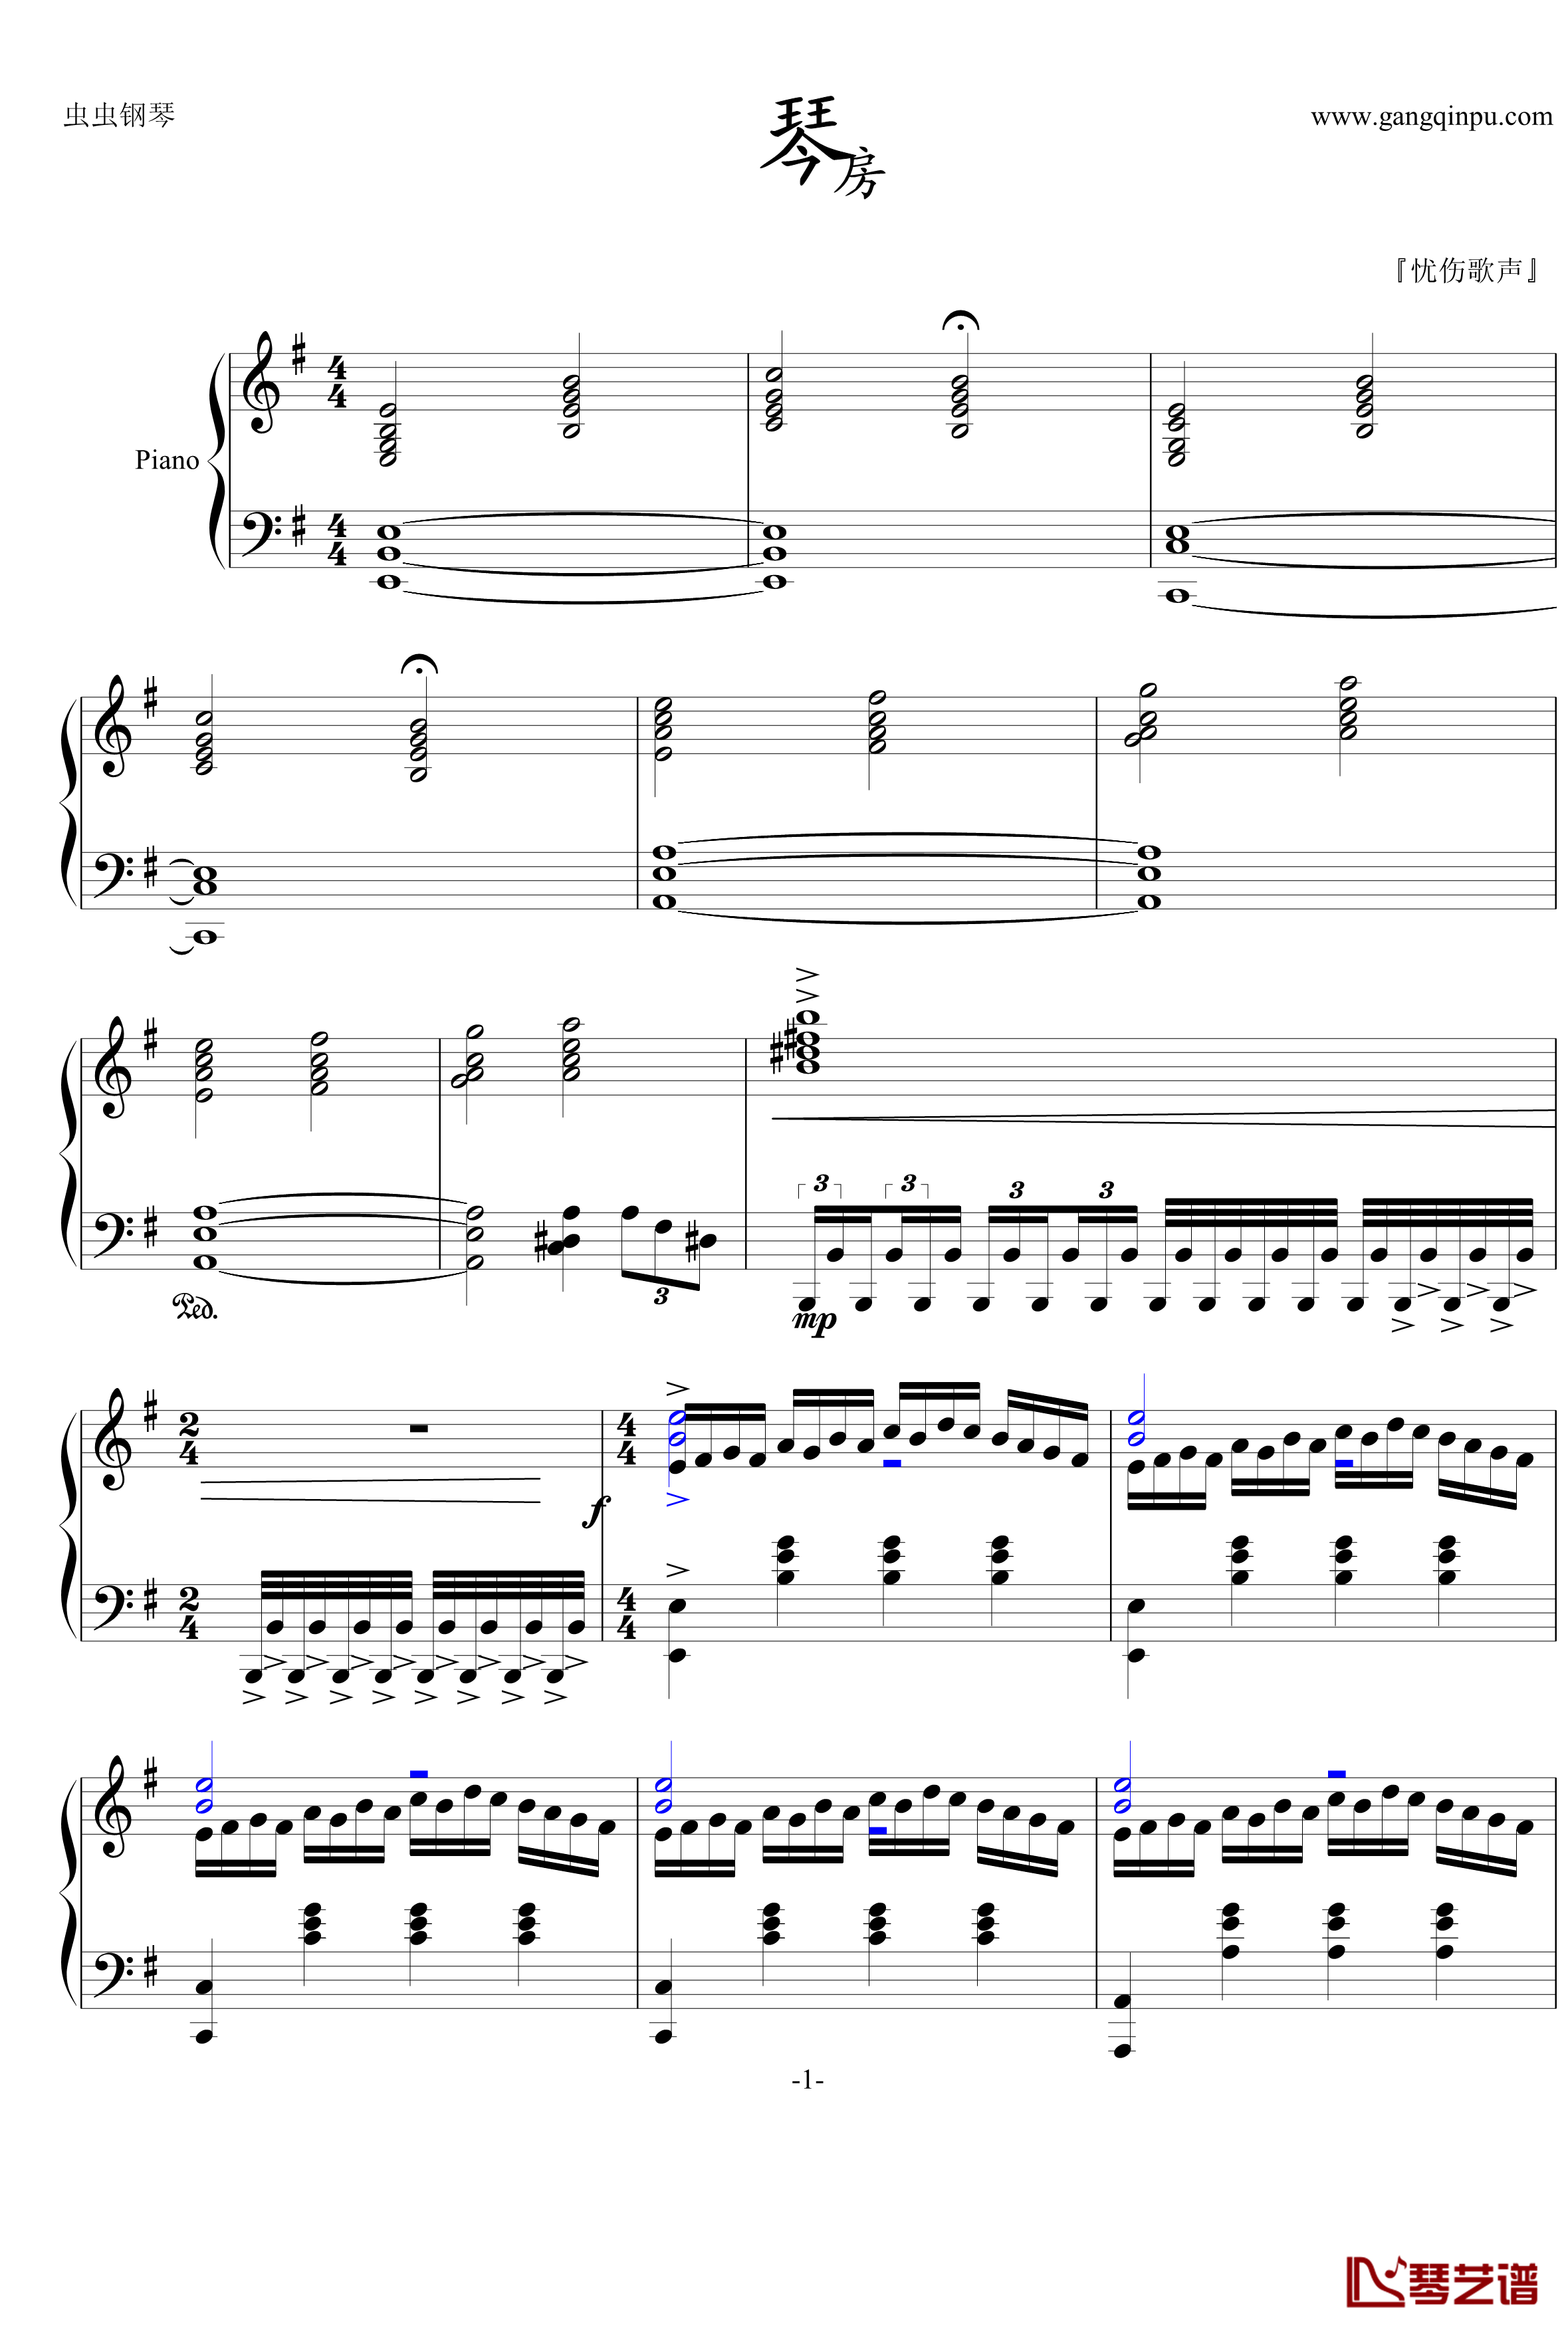 琴房钢琴谱-周杰伦1